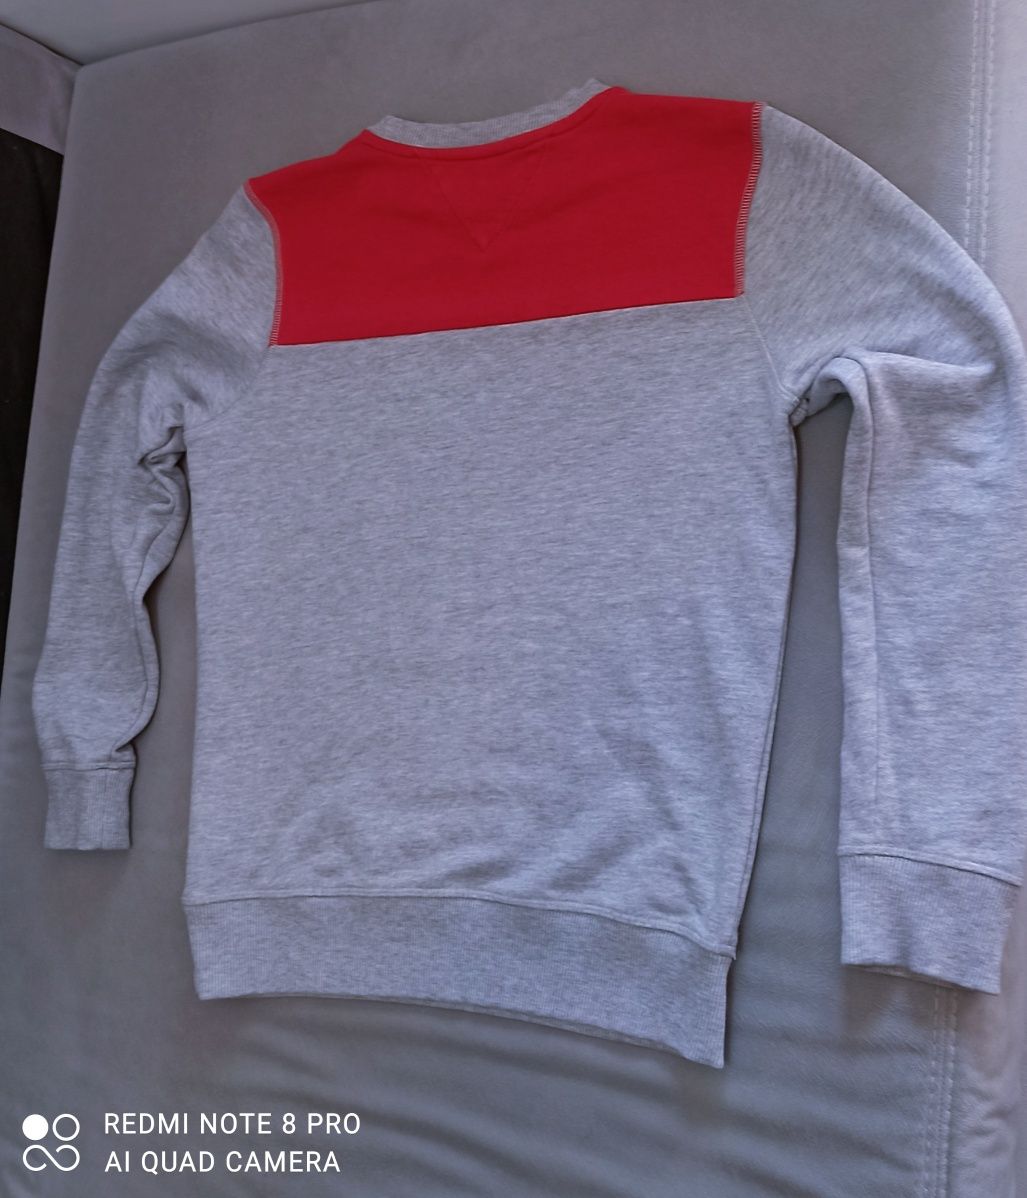 Tommy Hilfiger  modna bluza dla chłopca  rozmiar  164